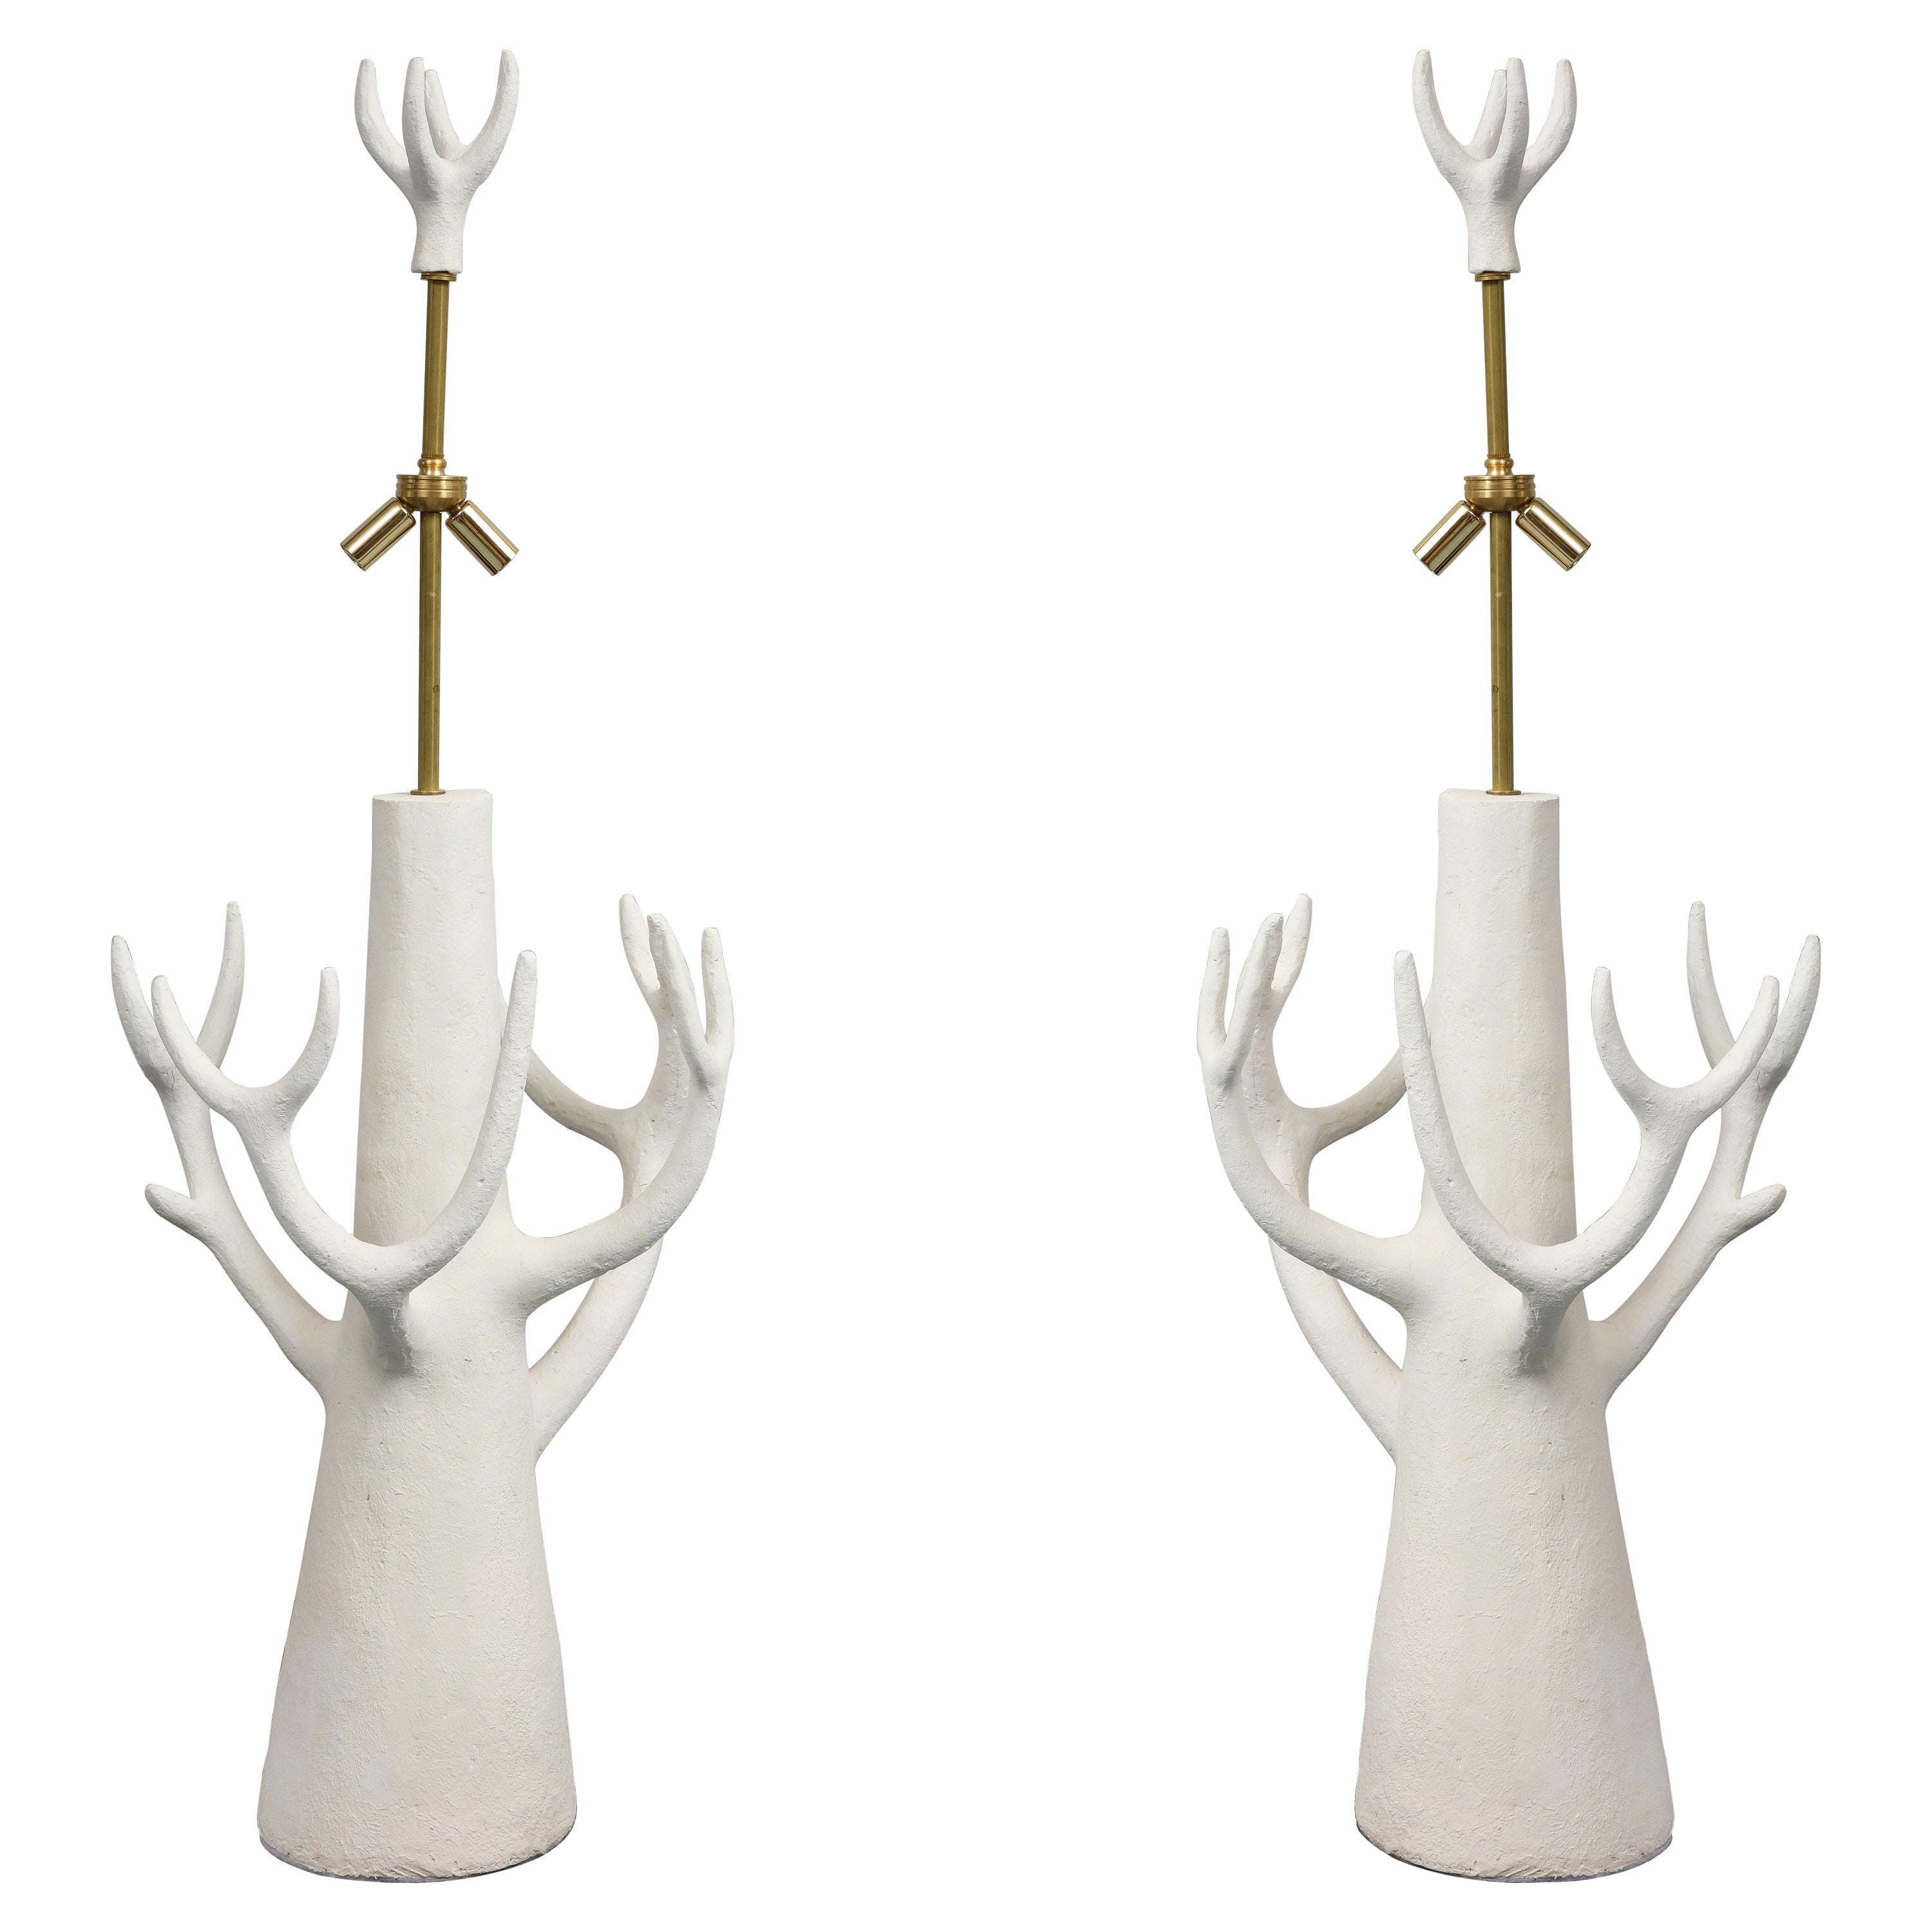 Dieses Lampenpaar aus weißer Keramik wurde von dem Bildhauer Jacques Darbaud geschaffen.  Der Baum war wahrscheinlich die Inspiration. Die Lampen  sind amerikanisch verkabelt. Diese Lampen  können ebenso gut wie Skulpturen betrachtet werden. 